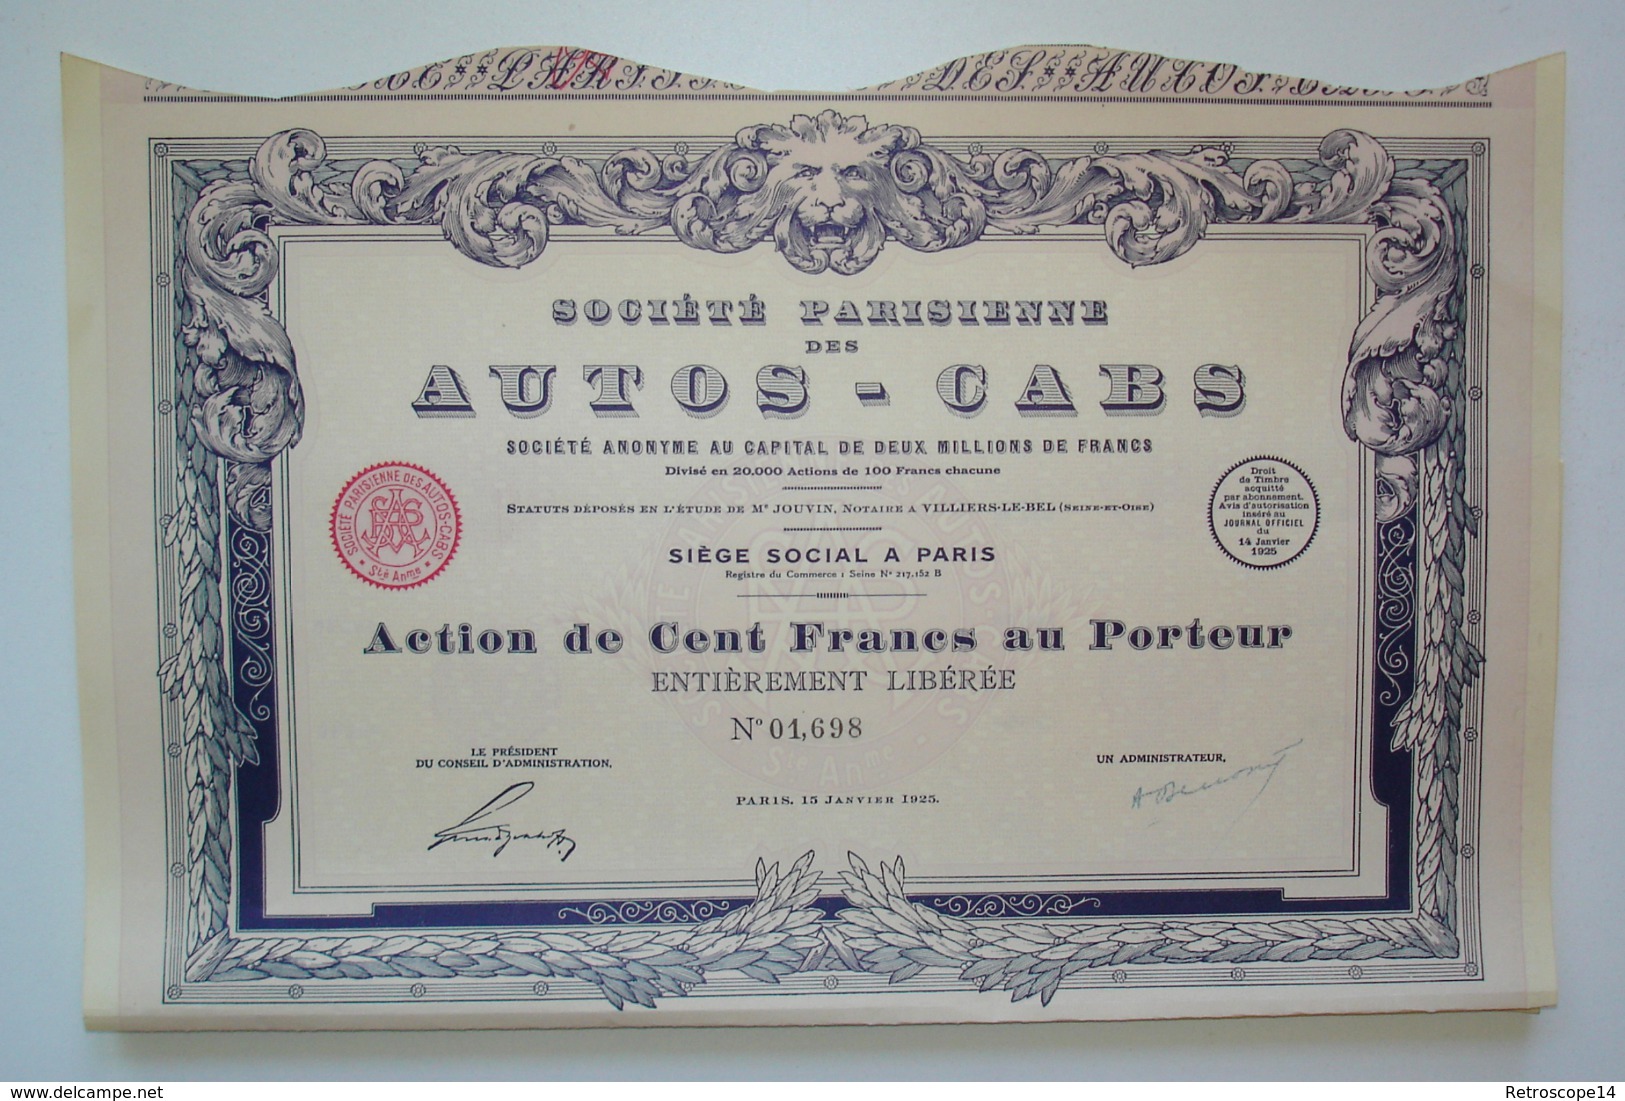 RARE. 1925. SOCIÉTÉ DES AUTOS-CABS Avec Coupons. ART DÉCO. - Automobil